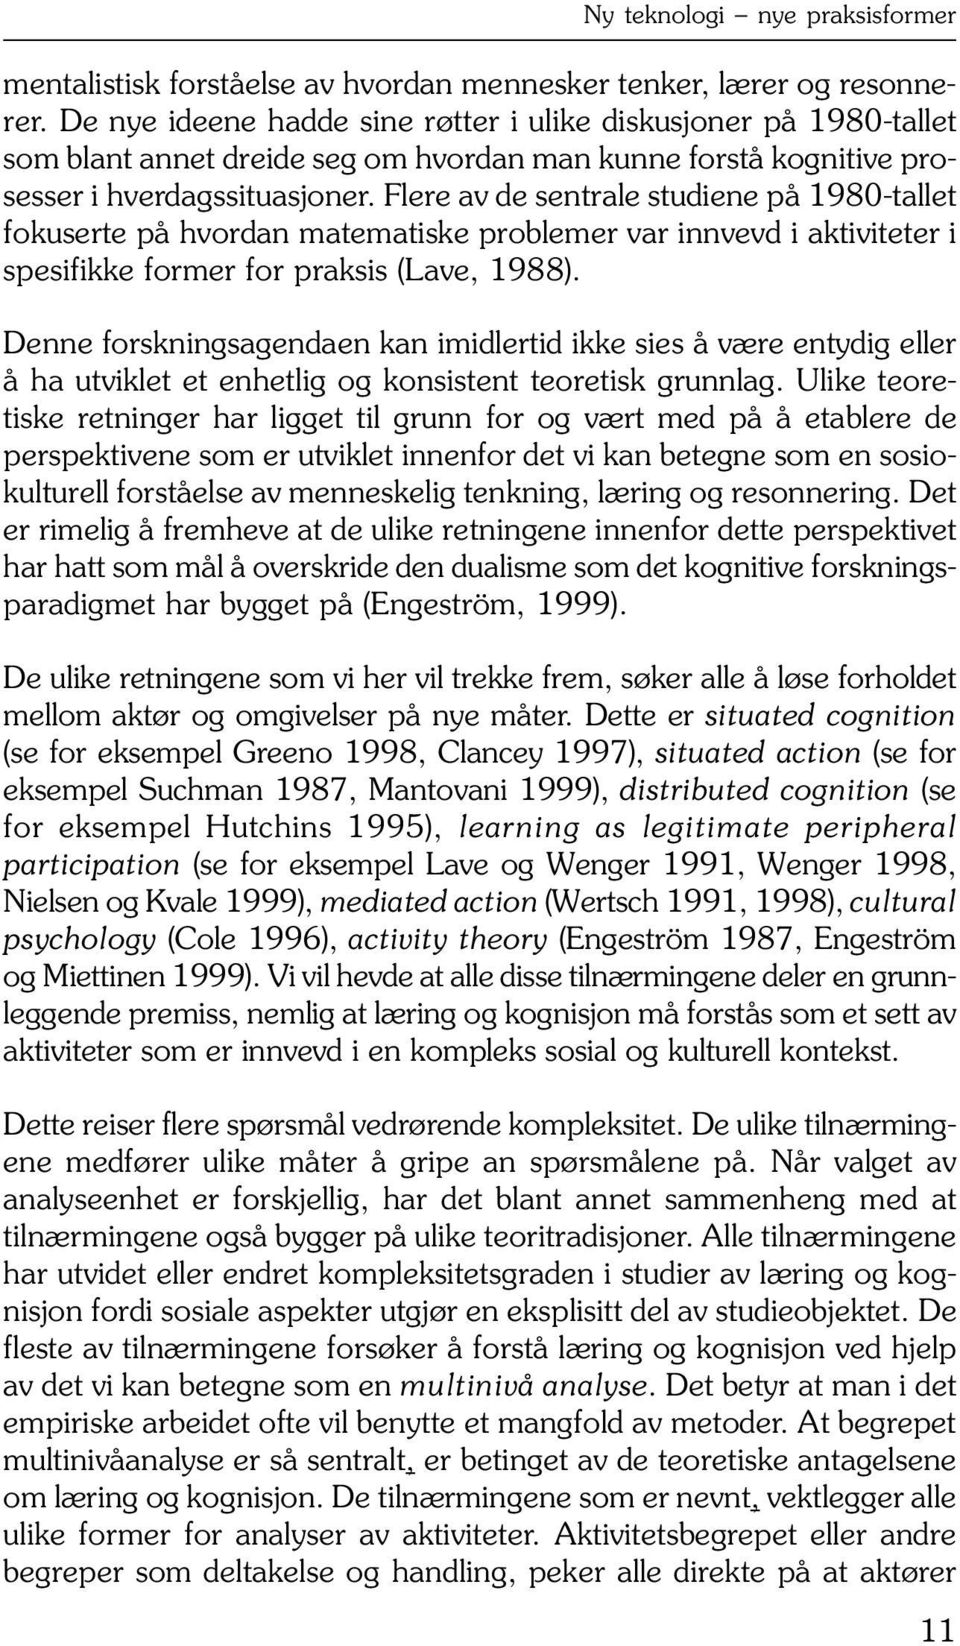 Flere av de sentrale studiene på 1980-tallet fokuserte på hvordan matematiske problemer var innvevd i aktiviteter i spesifikke former for praksis (Lave, 1988).